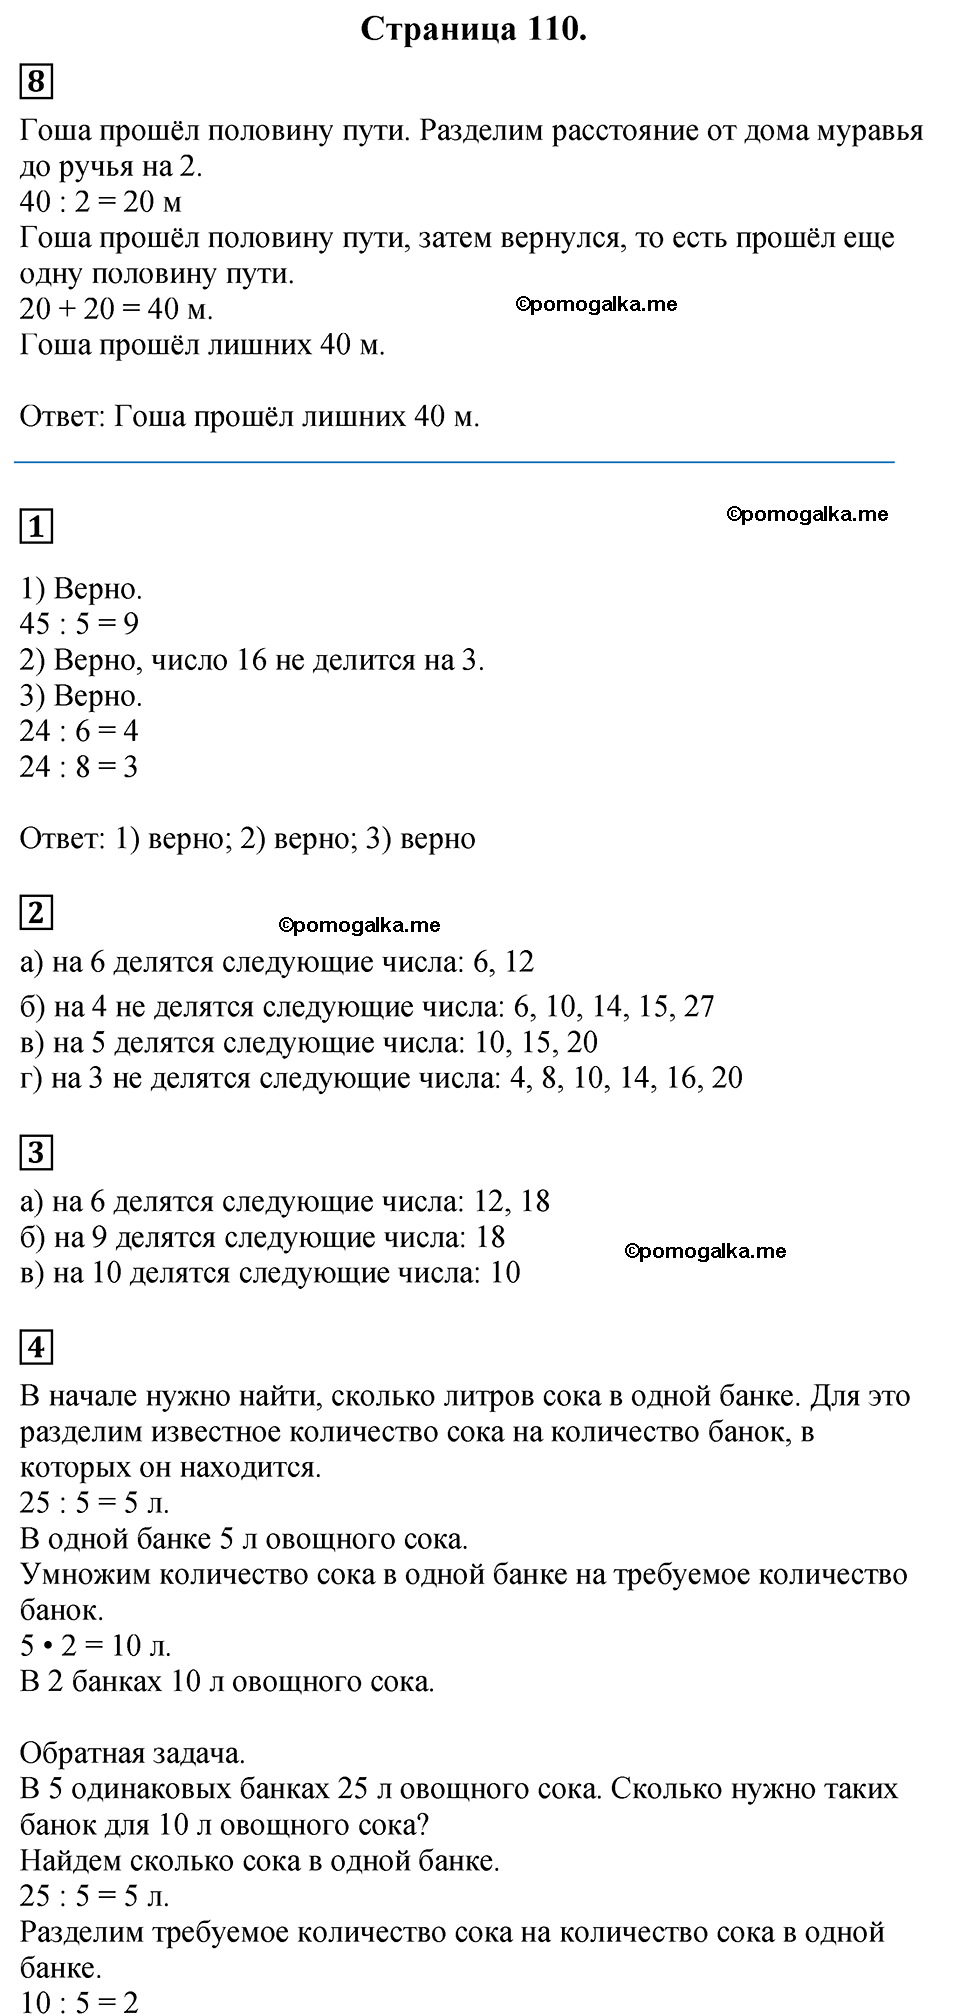 Страница №110 Часть 1 математика 3 класс Дорофеев